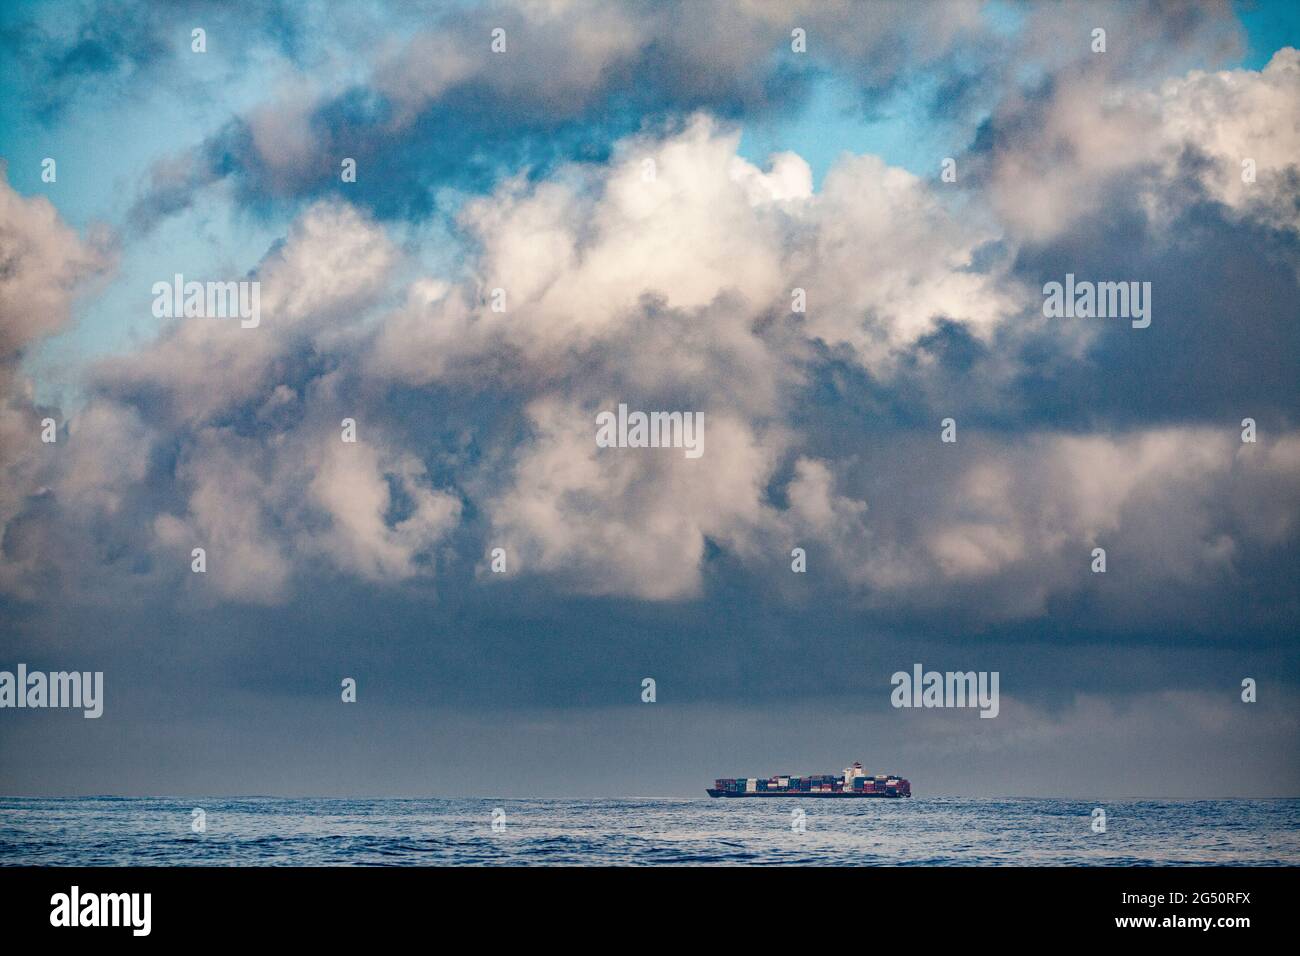 Enorme nave container nelle distese dell'oceano pacifico con drammatico paesaggio torbido di una tempesta imminente Foto Stock